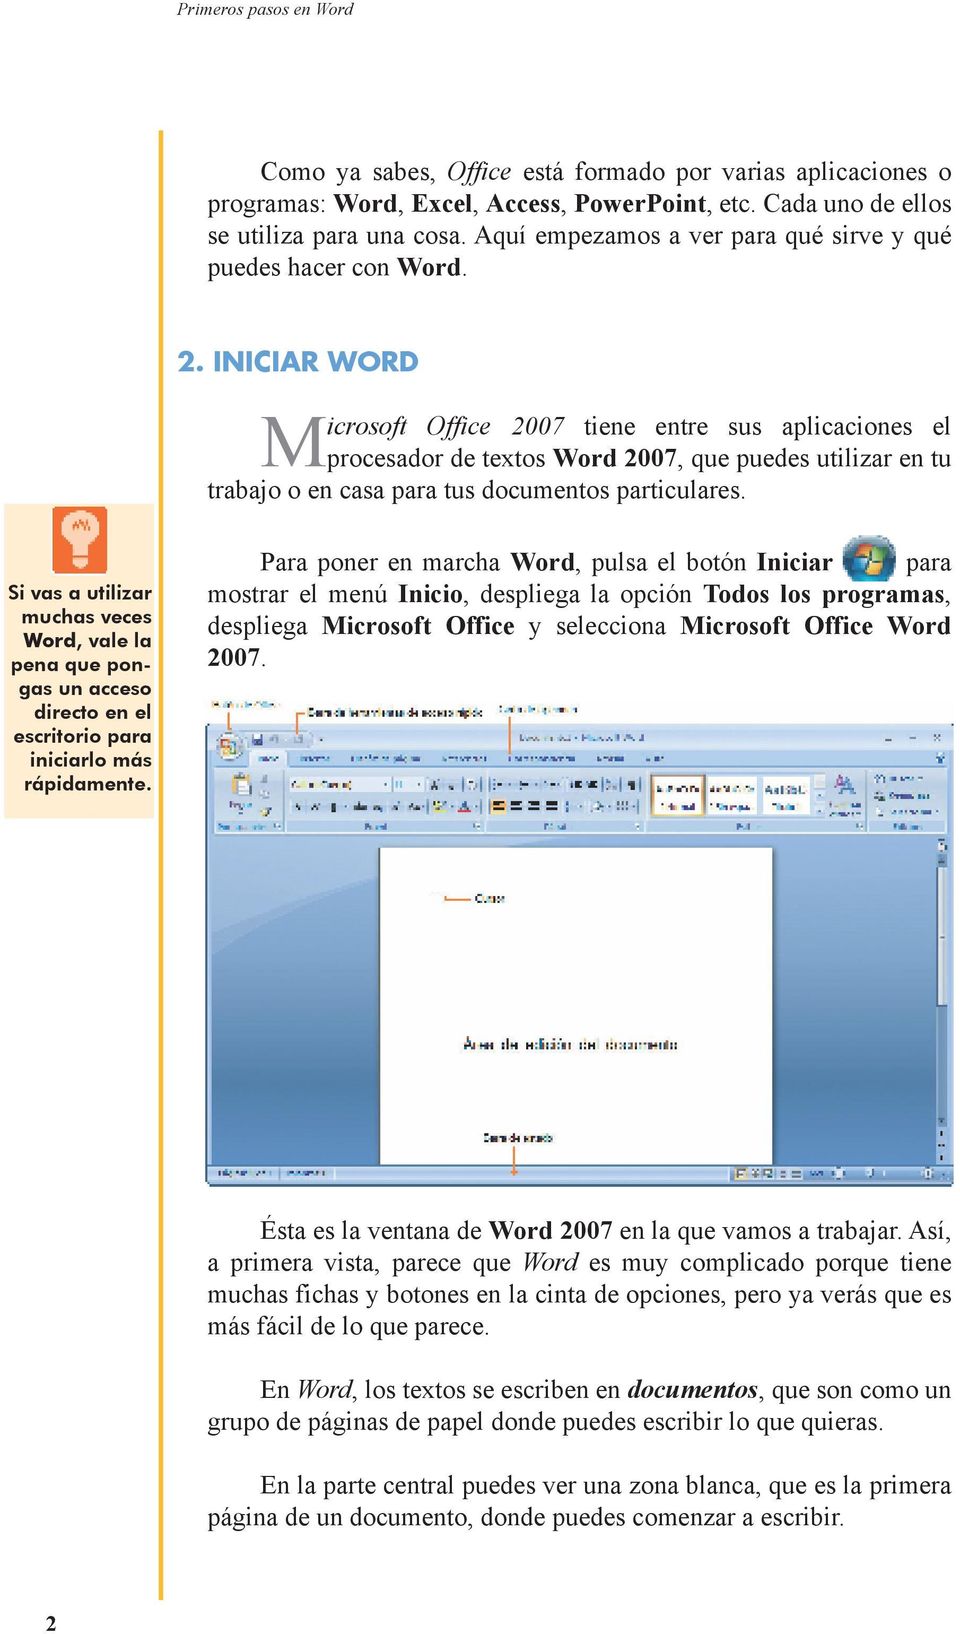 INICIAR WORD Microsoft Office 2007 tiene entre sus aplicaciones el procesador de textos Word 2007, que puedes utilizar en tu trabajo o en casa para tus documentos particulares.